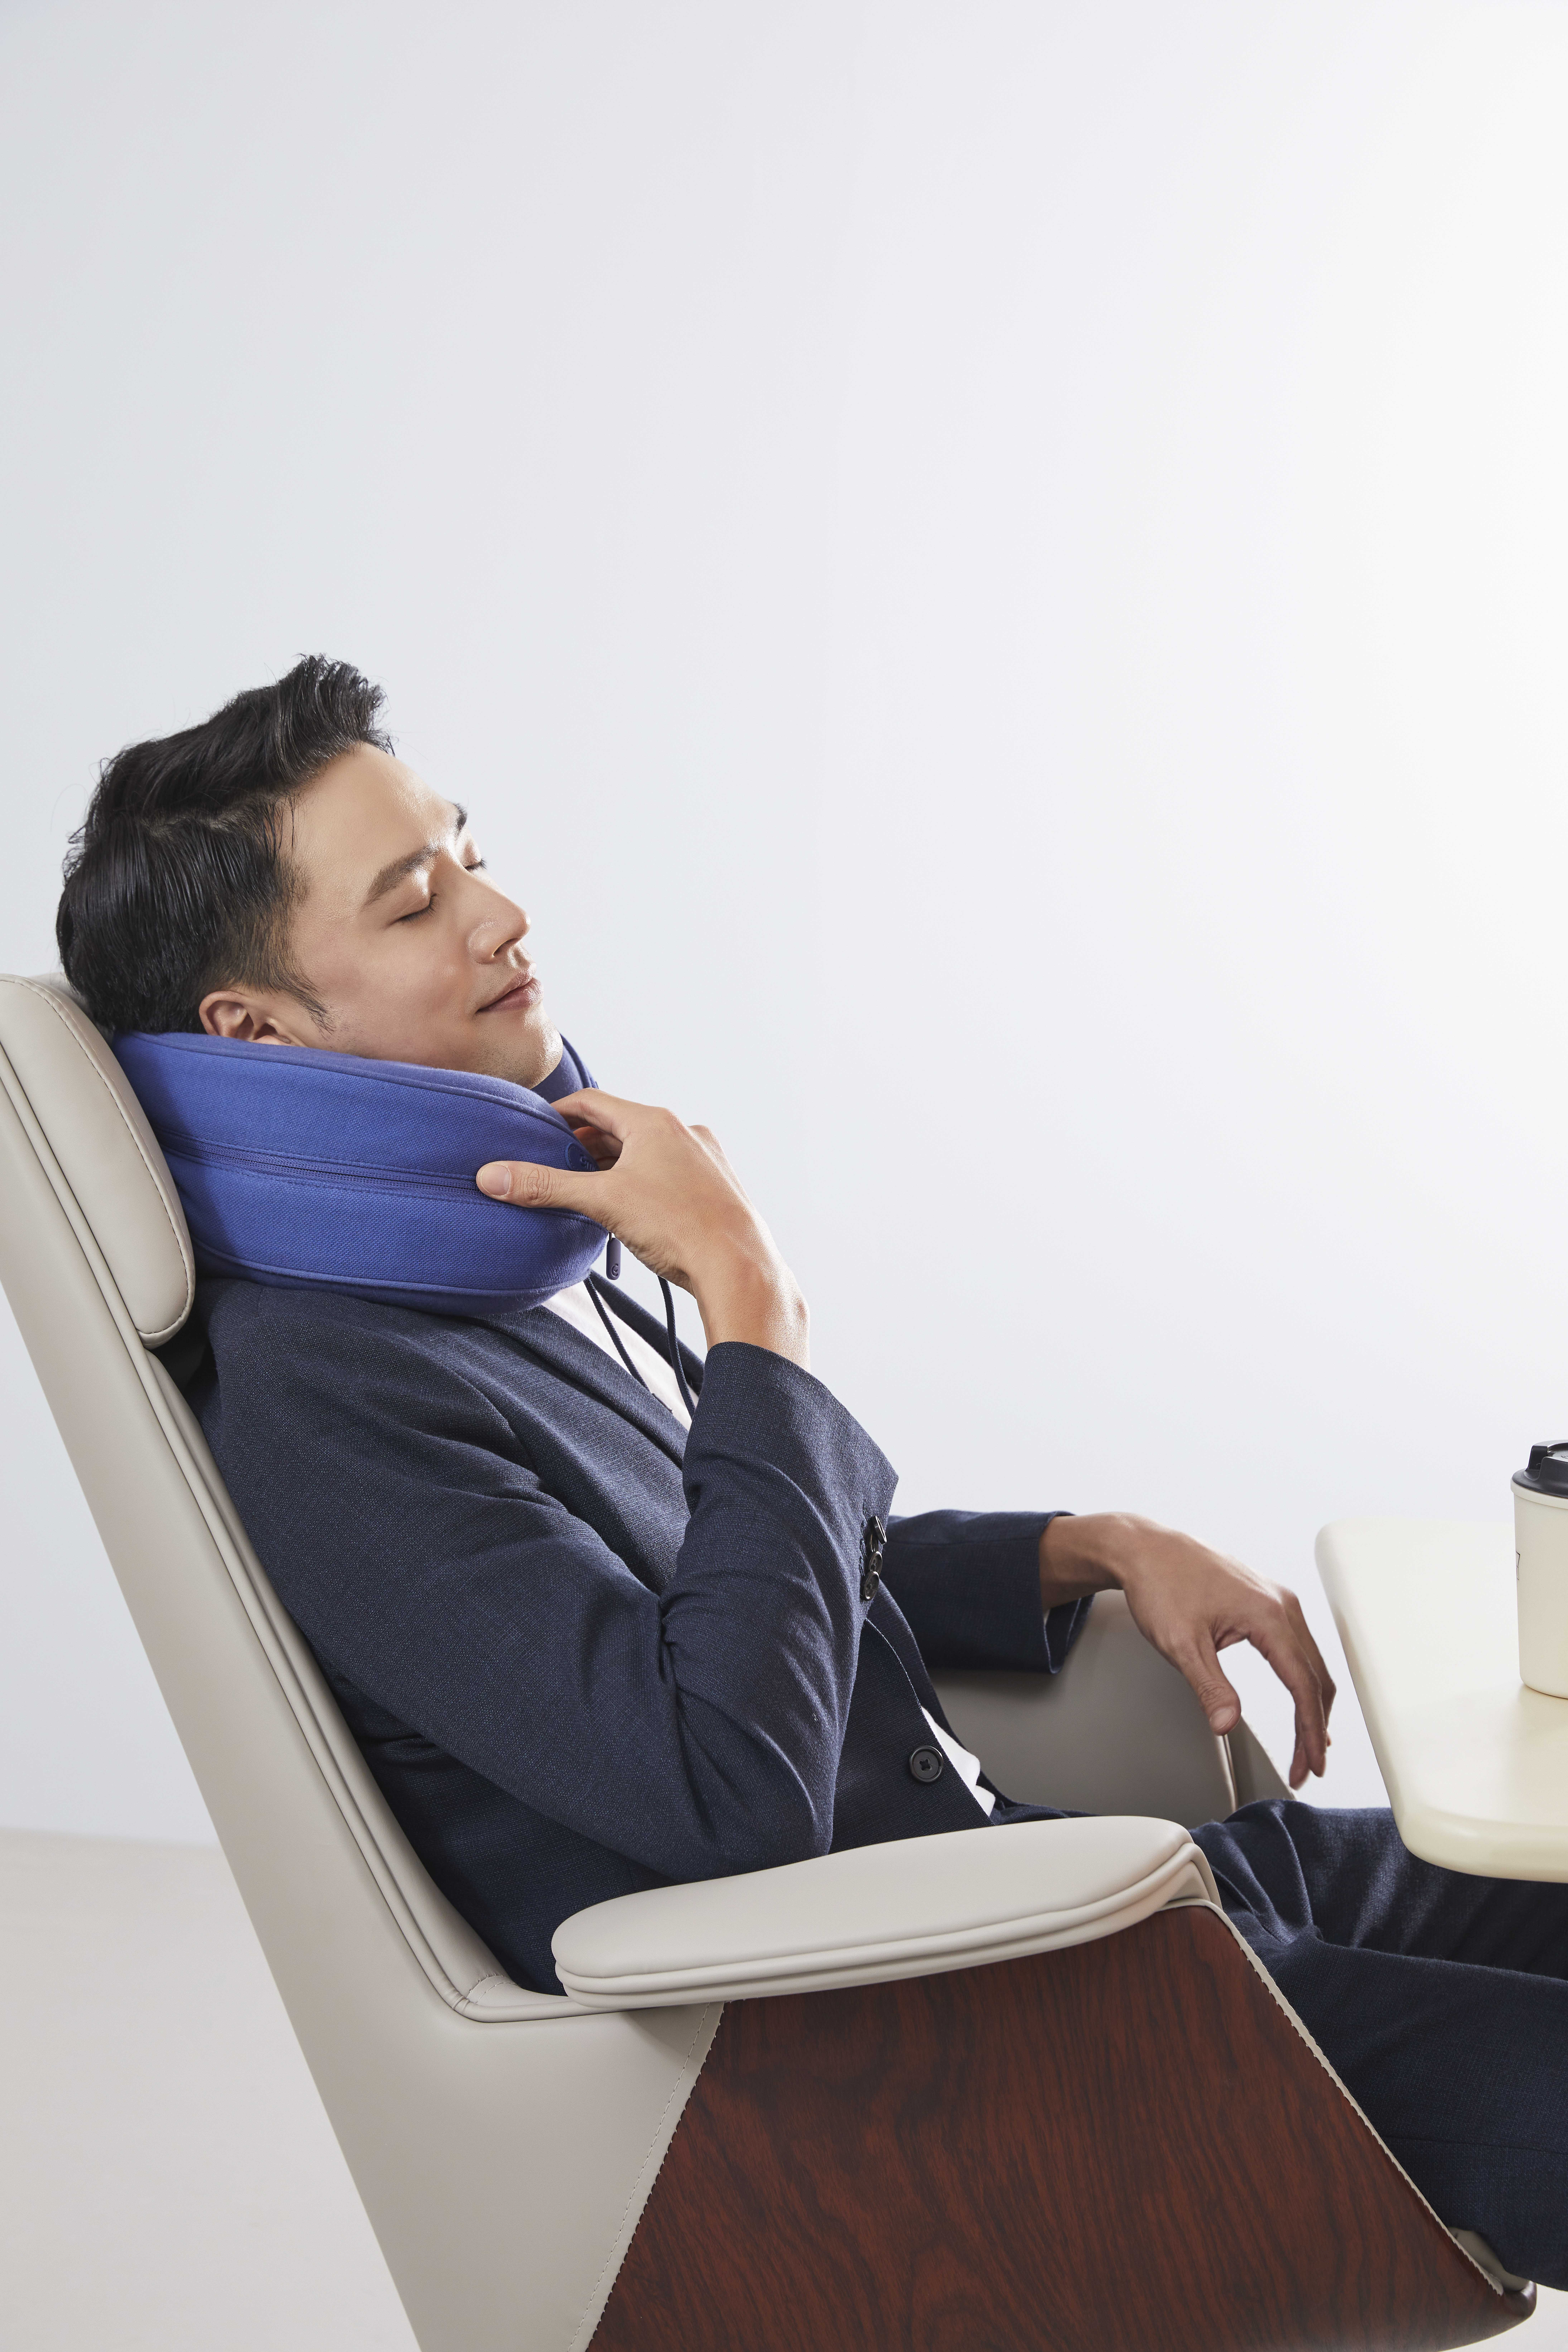 艾玛乐眠推出巴斯夫 CosyPUR® 制成的新一代多功能护颈枕